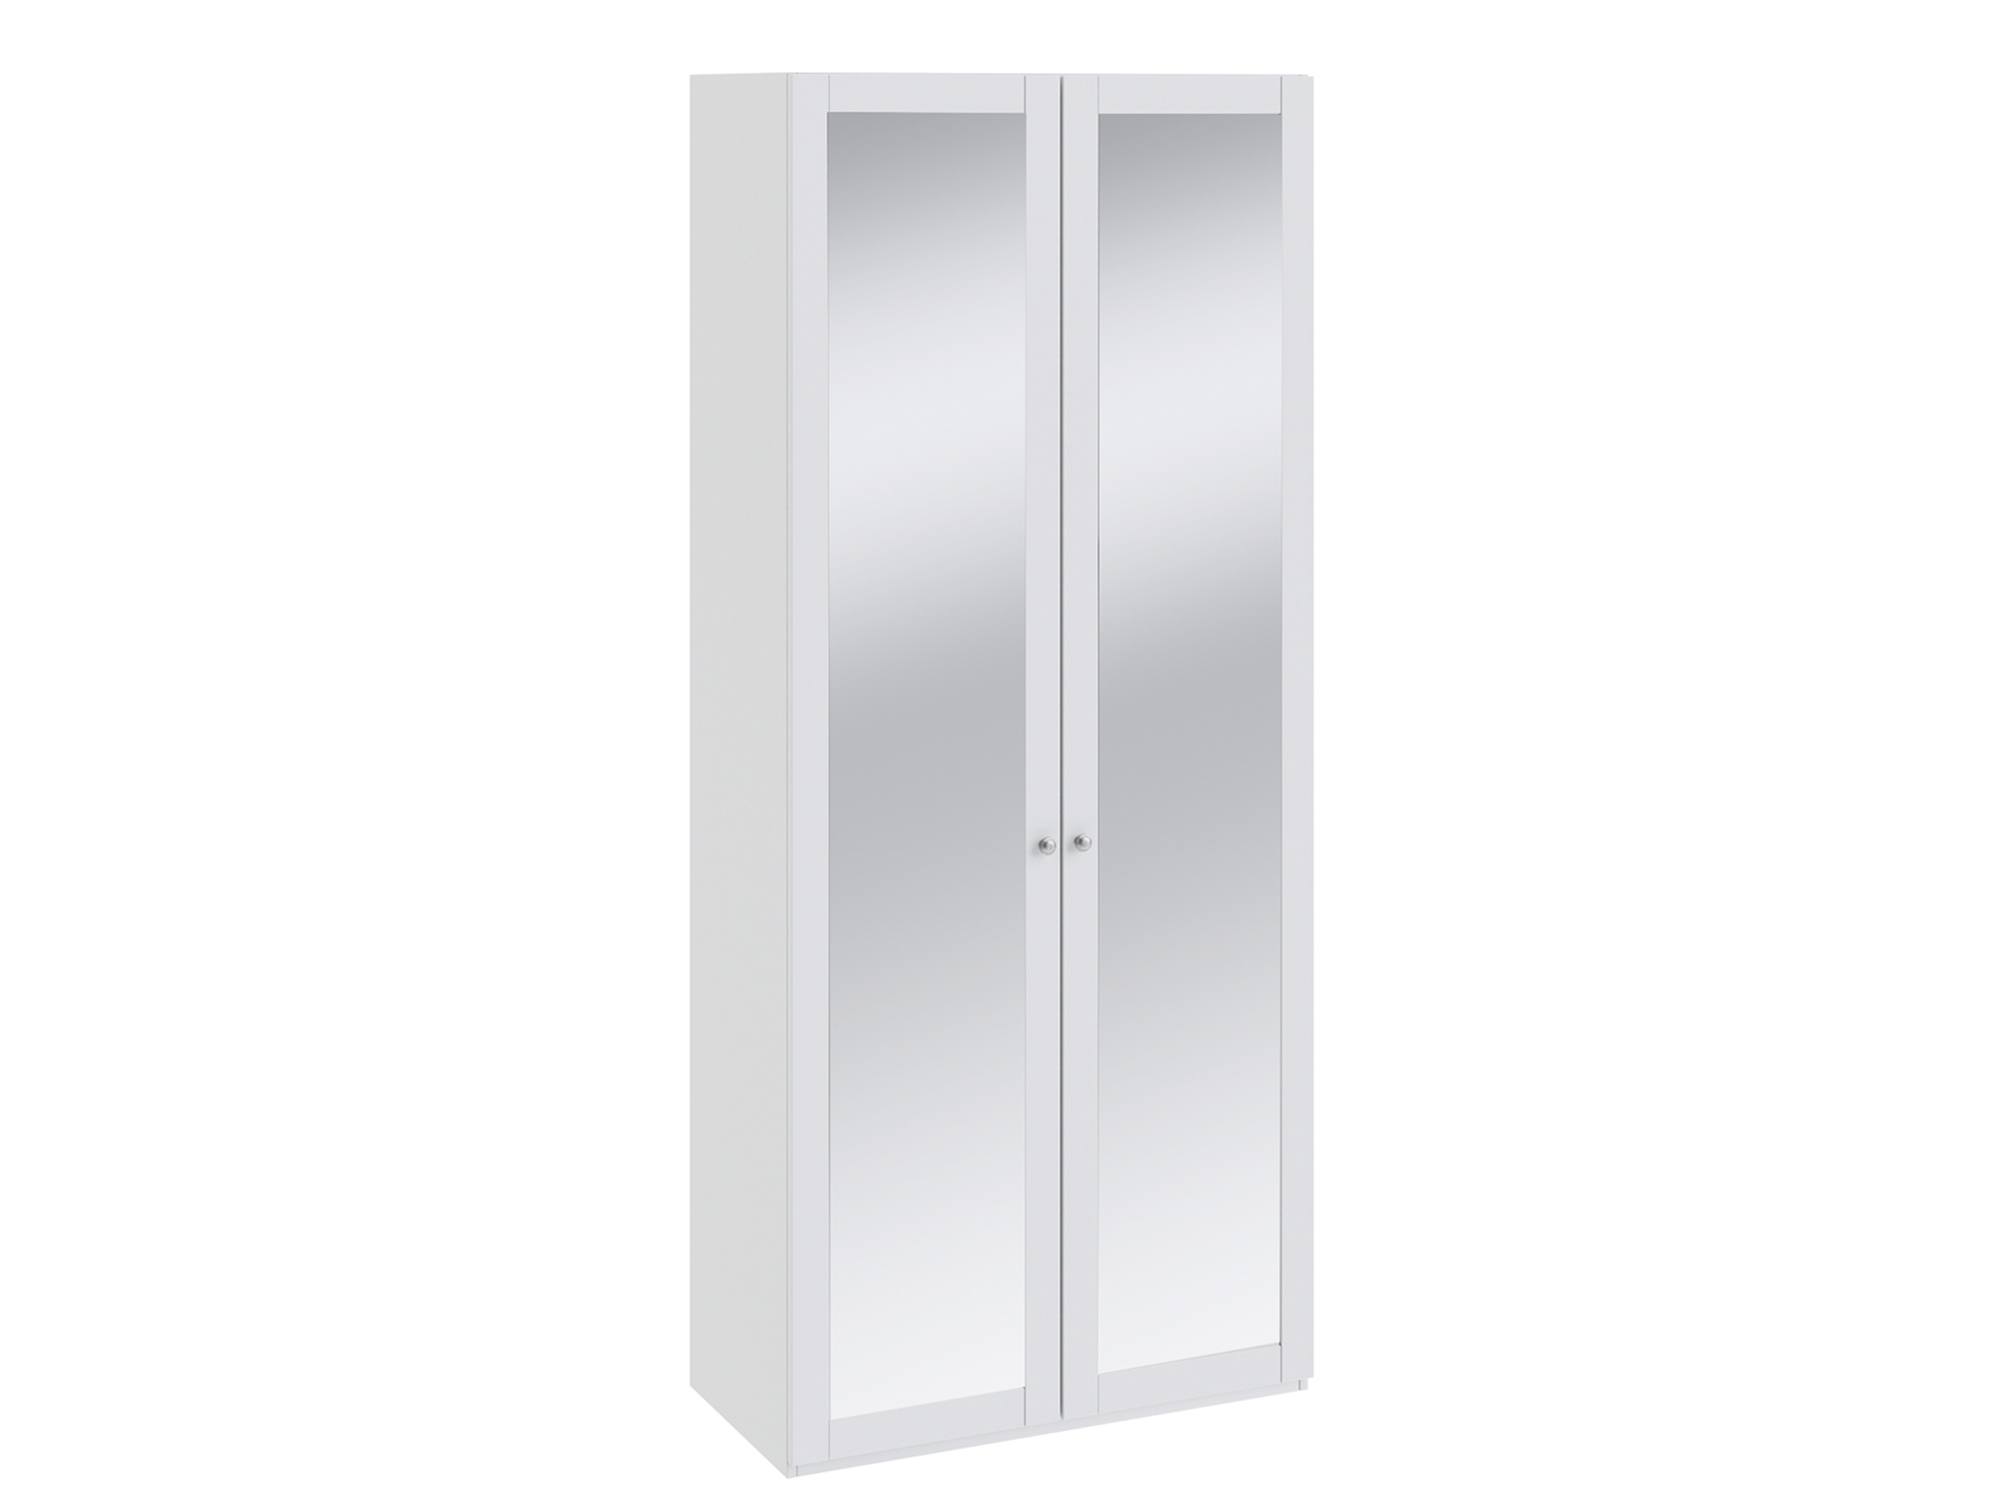 Шкаф для одежды с 2-мя зеркальными дверями Ривьера Белый, МДФ, Зеркало, ЛДСП, Кромка ABS шкаф для одежды с 2 мя дверями ривьера белый мдф лдсп кромка abs